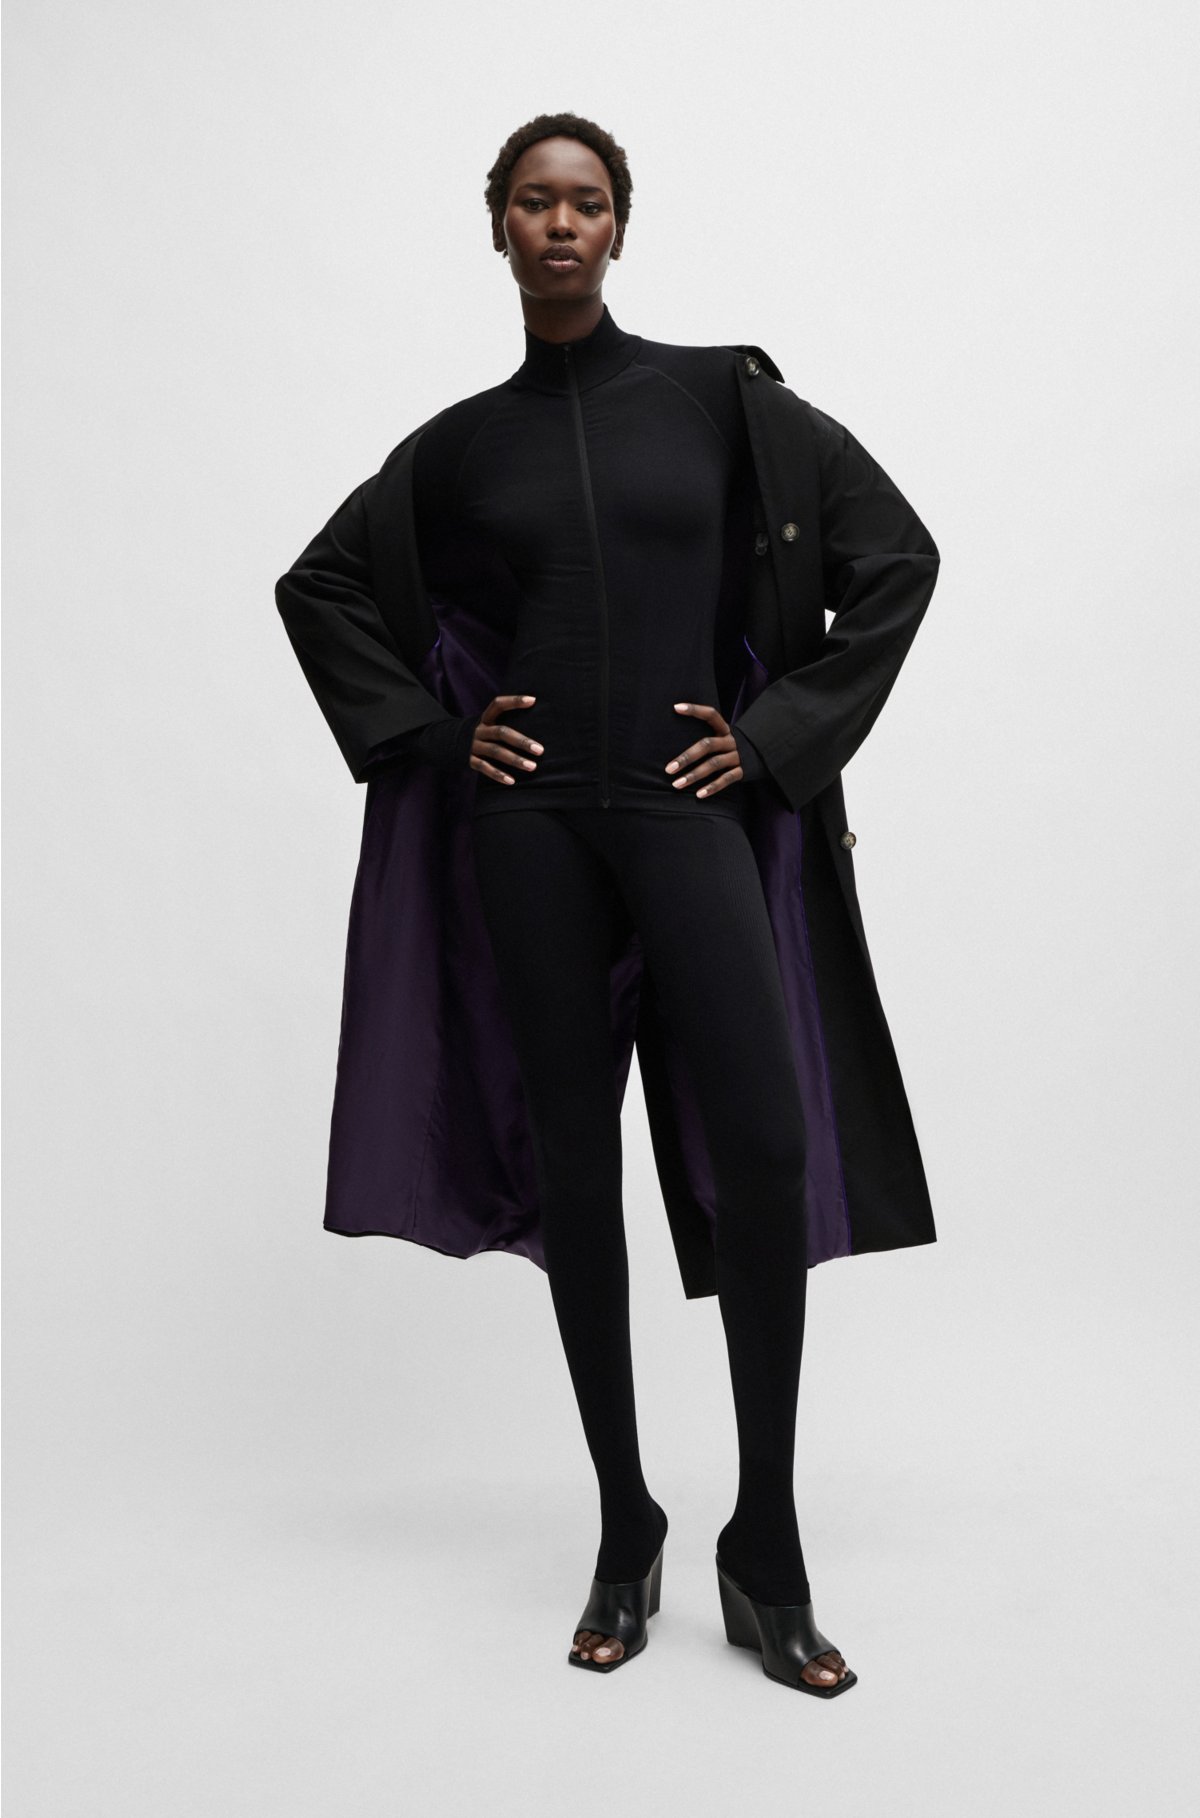 NAOMI x BOSS water-repellent coat in virgin wool, Black